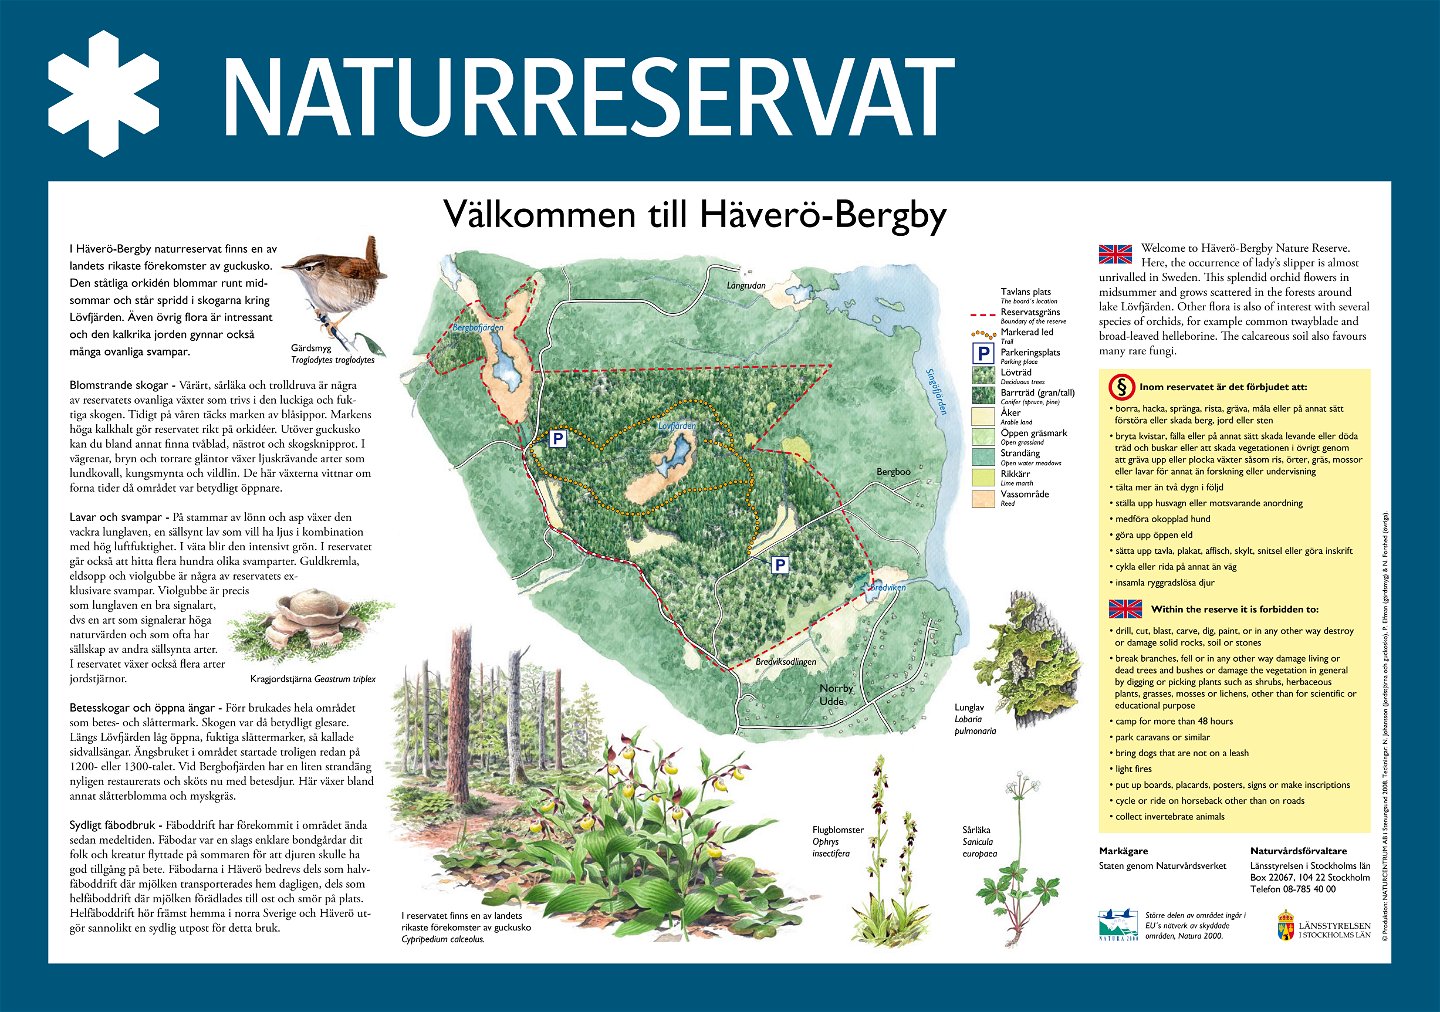 Välkommen till Häverö-Bergby naturreservat.